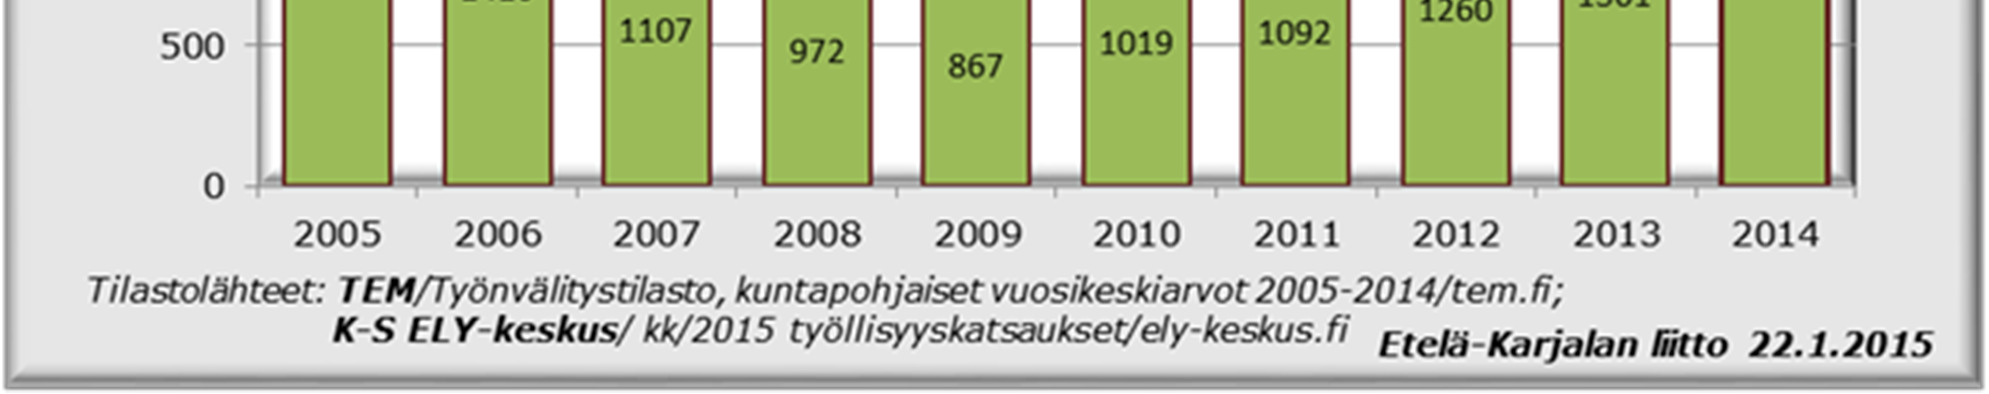 Kahden lukion (Joutseno, Lauritsala) lakkauttaminen Lappeenrannassa vaikuttaa hakijamäärän kasvuun.